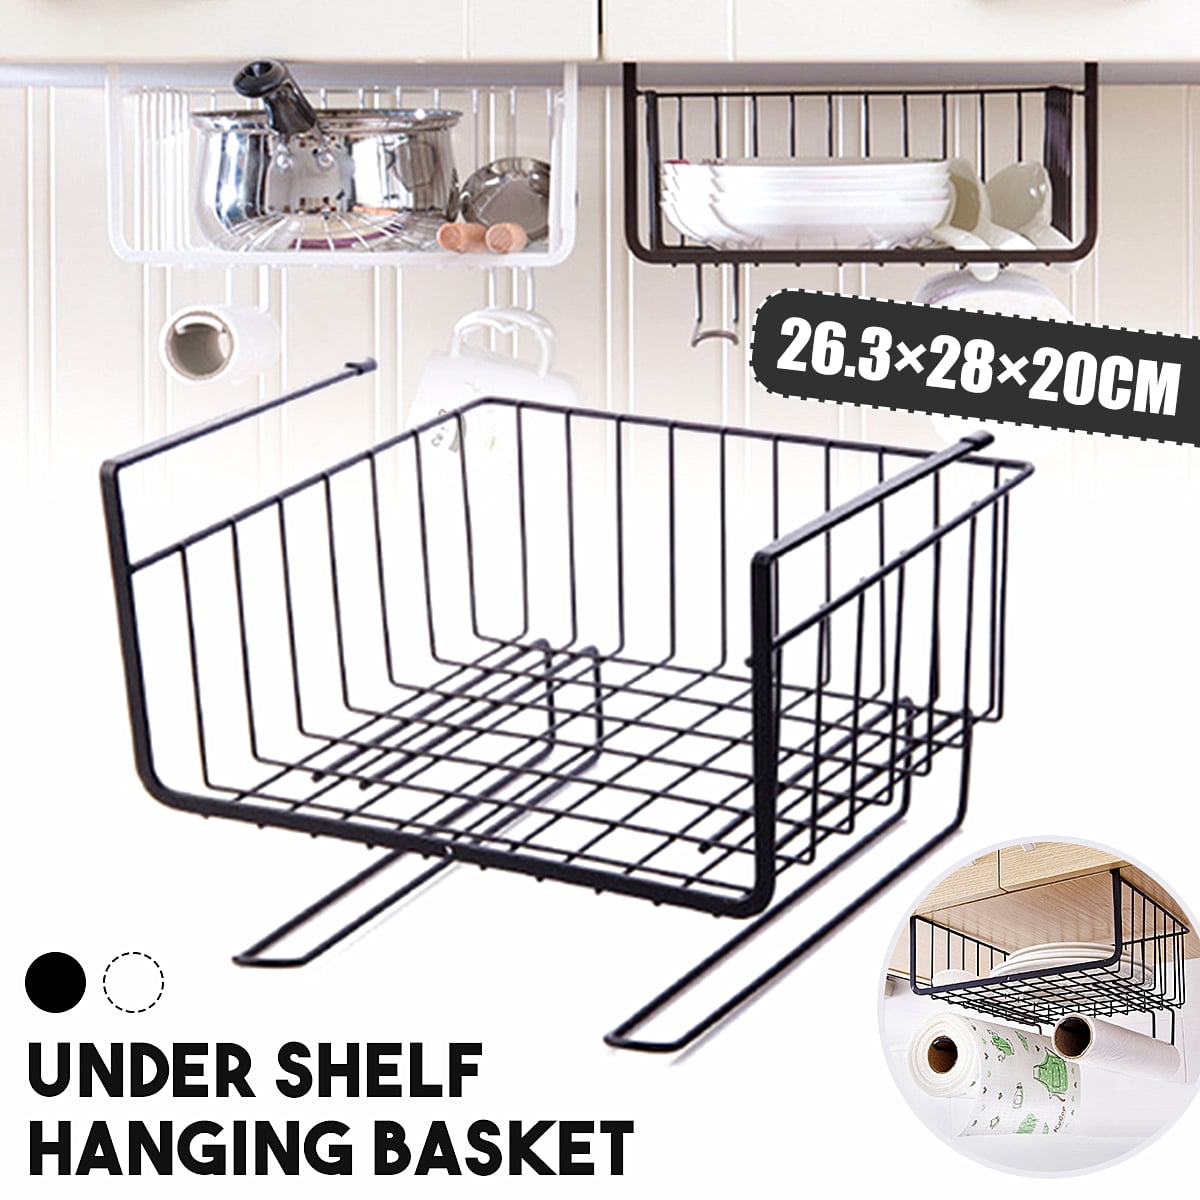 for Kitchen Cupboards Under Shelf Storage Basket,Under Cabinet Hanging Metal Wire Storage,Under Shelf Basket,Cupboard Shelf Organiser Bathroom Black Shelves